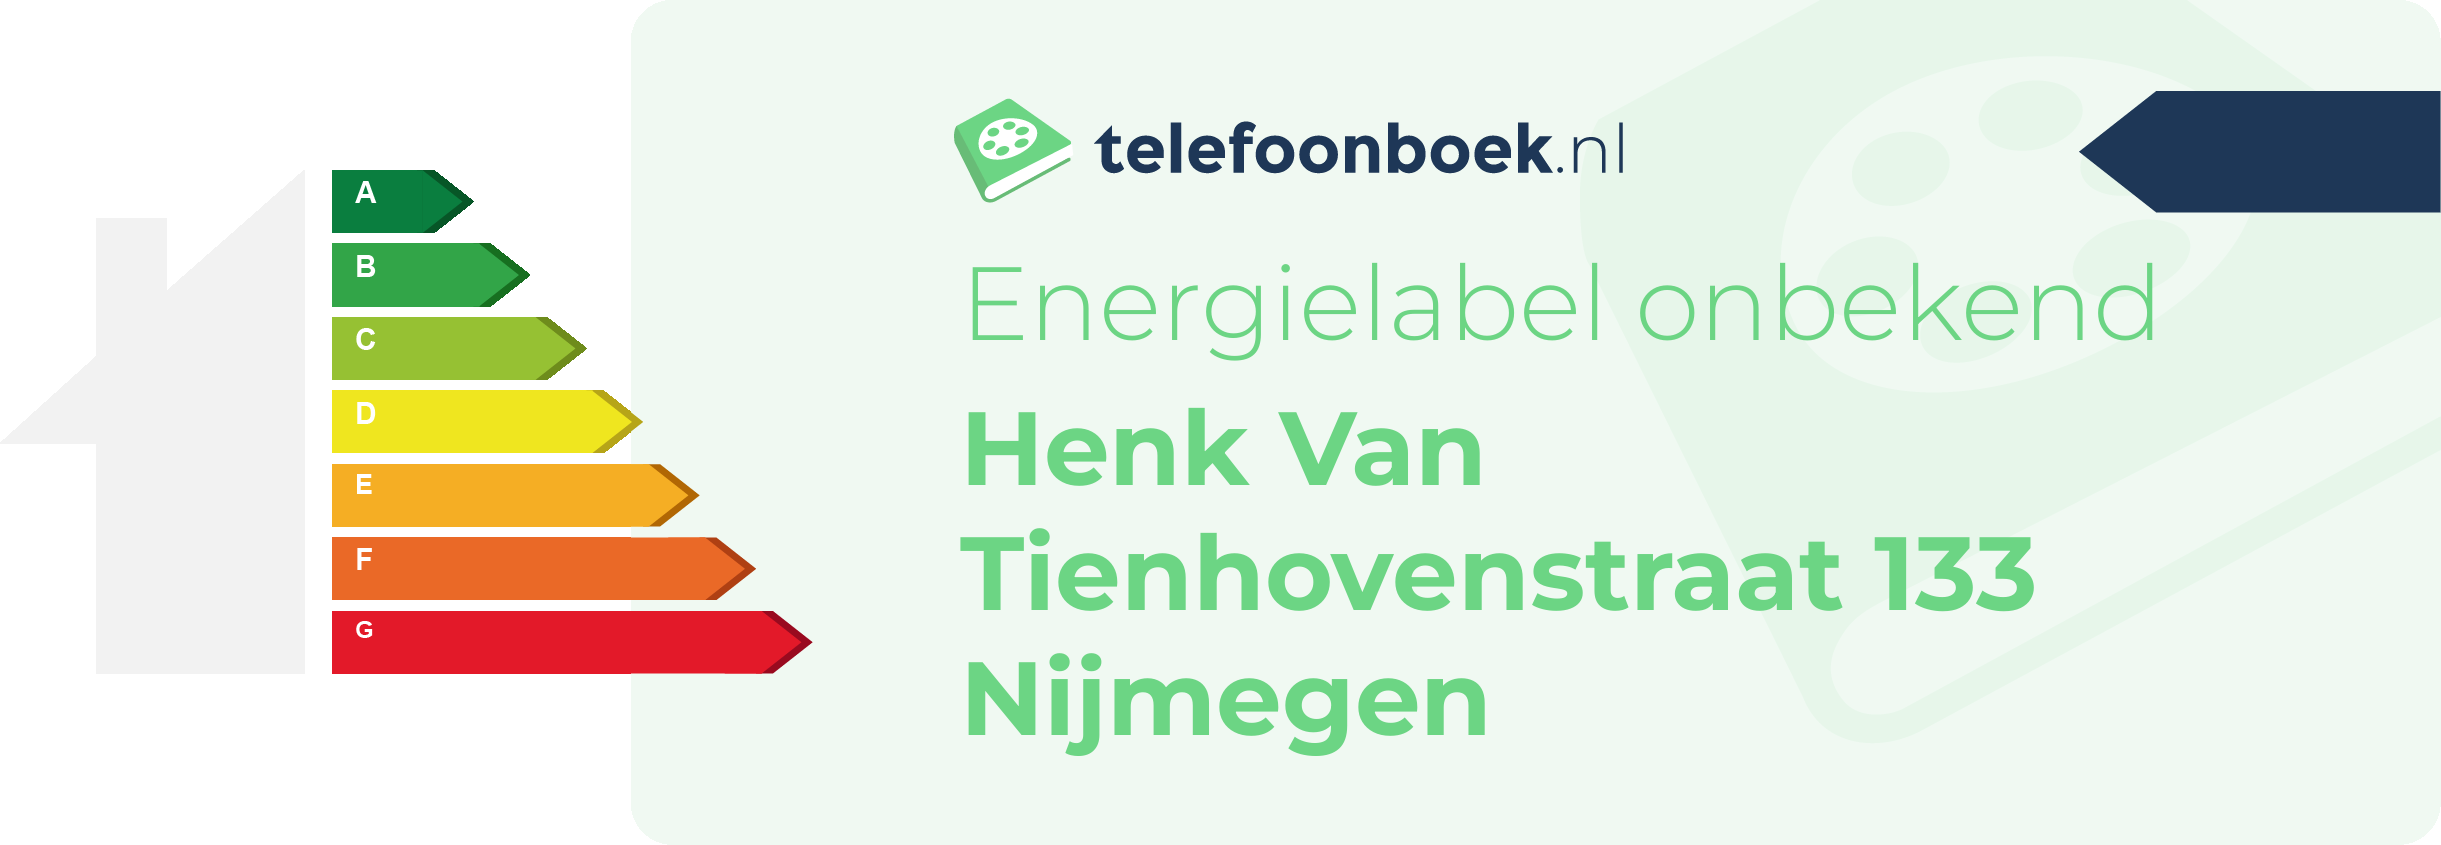 Energielabel Henk Van Tienhovenstraat 133 Nijmegen